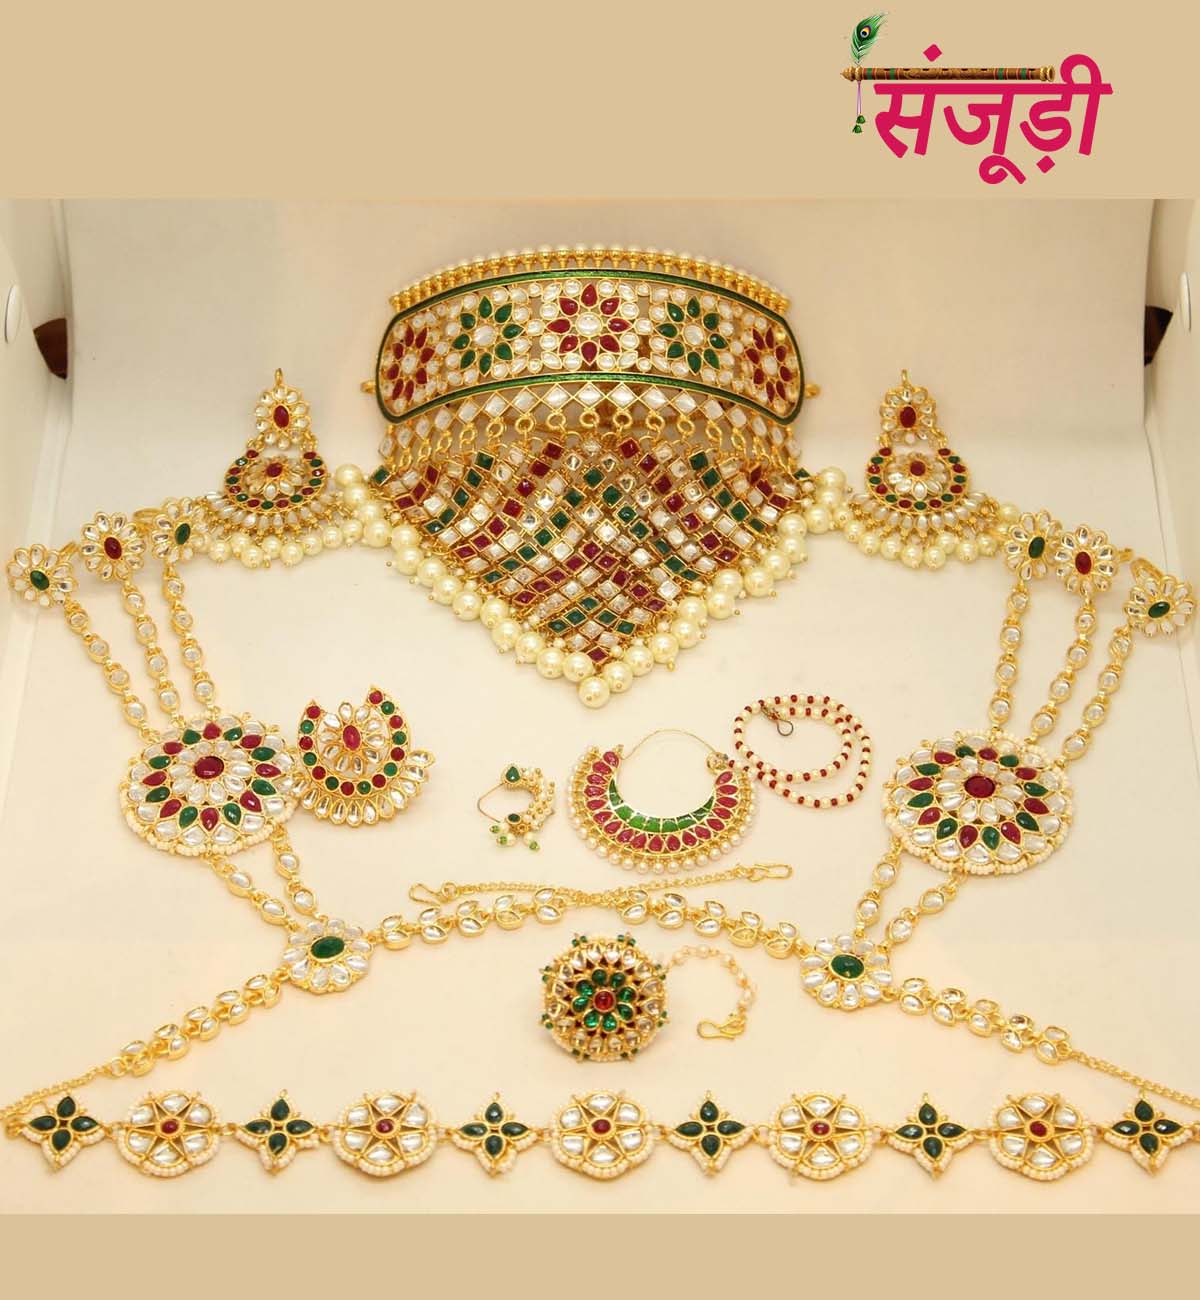 Rajasthani Jewellery Set with Aad